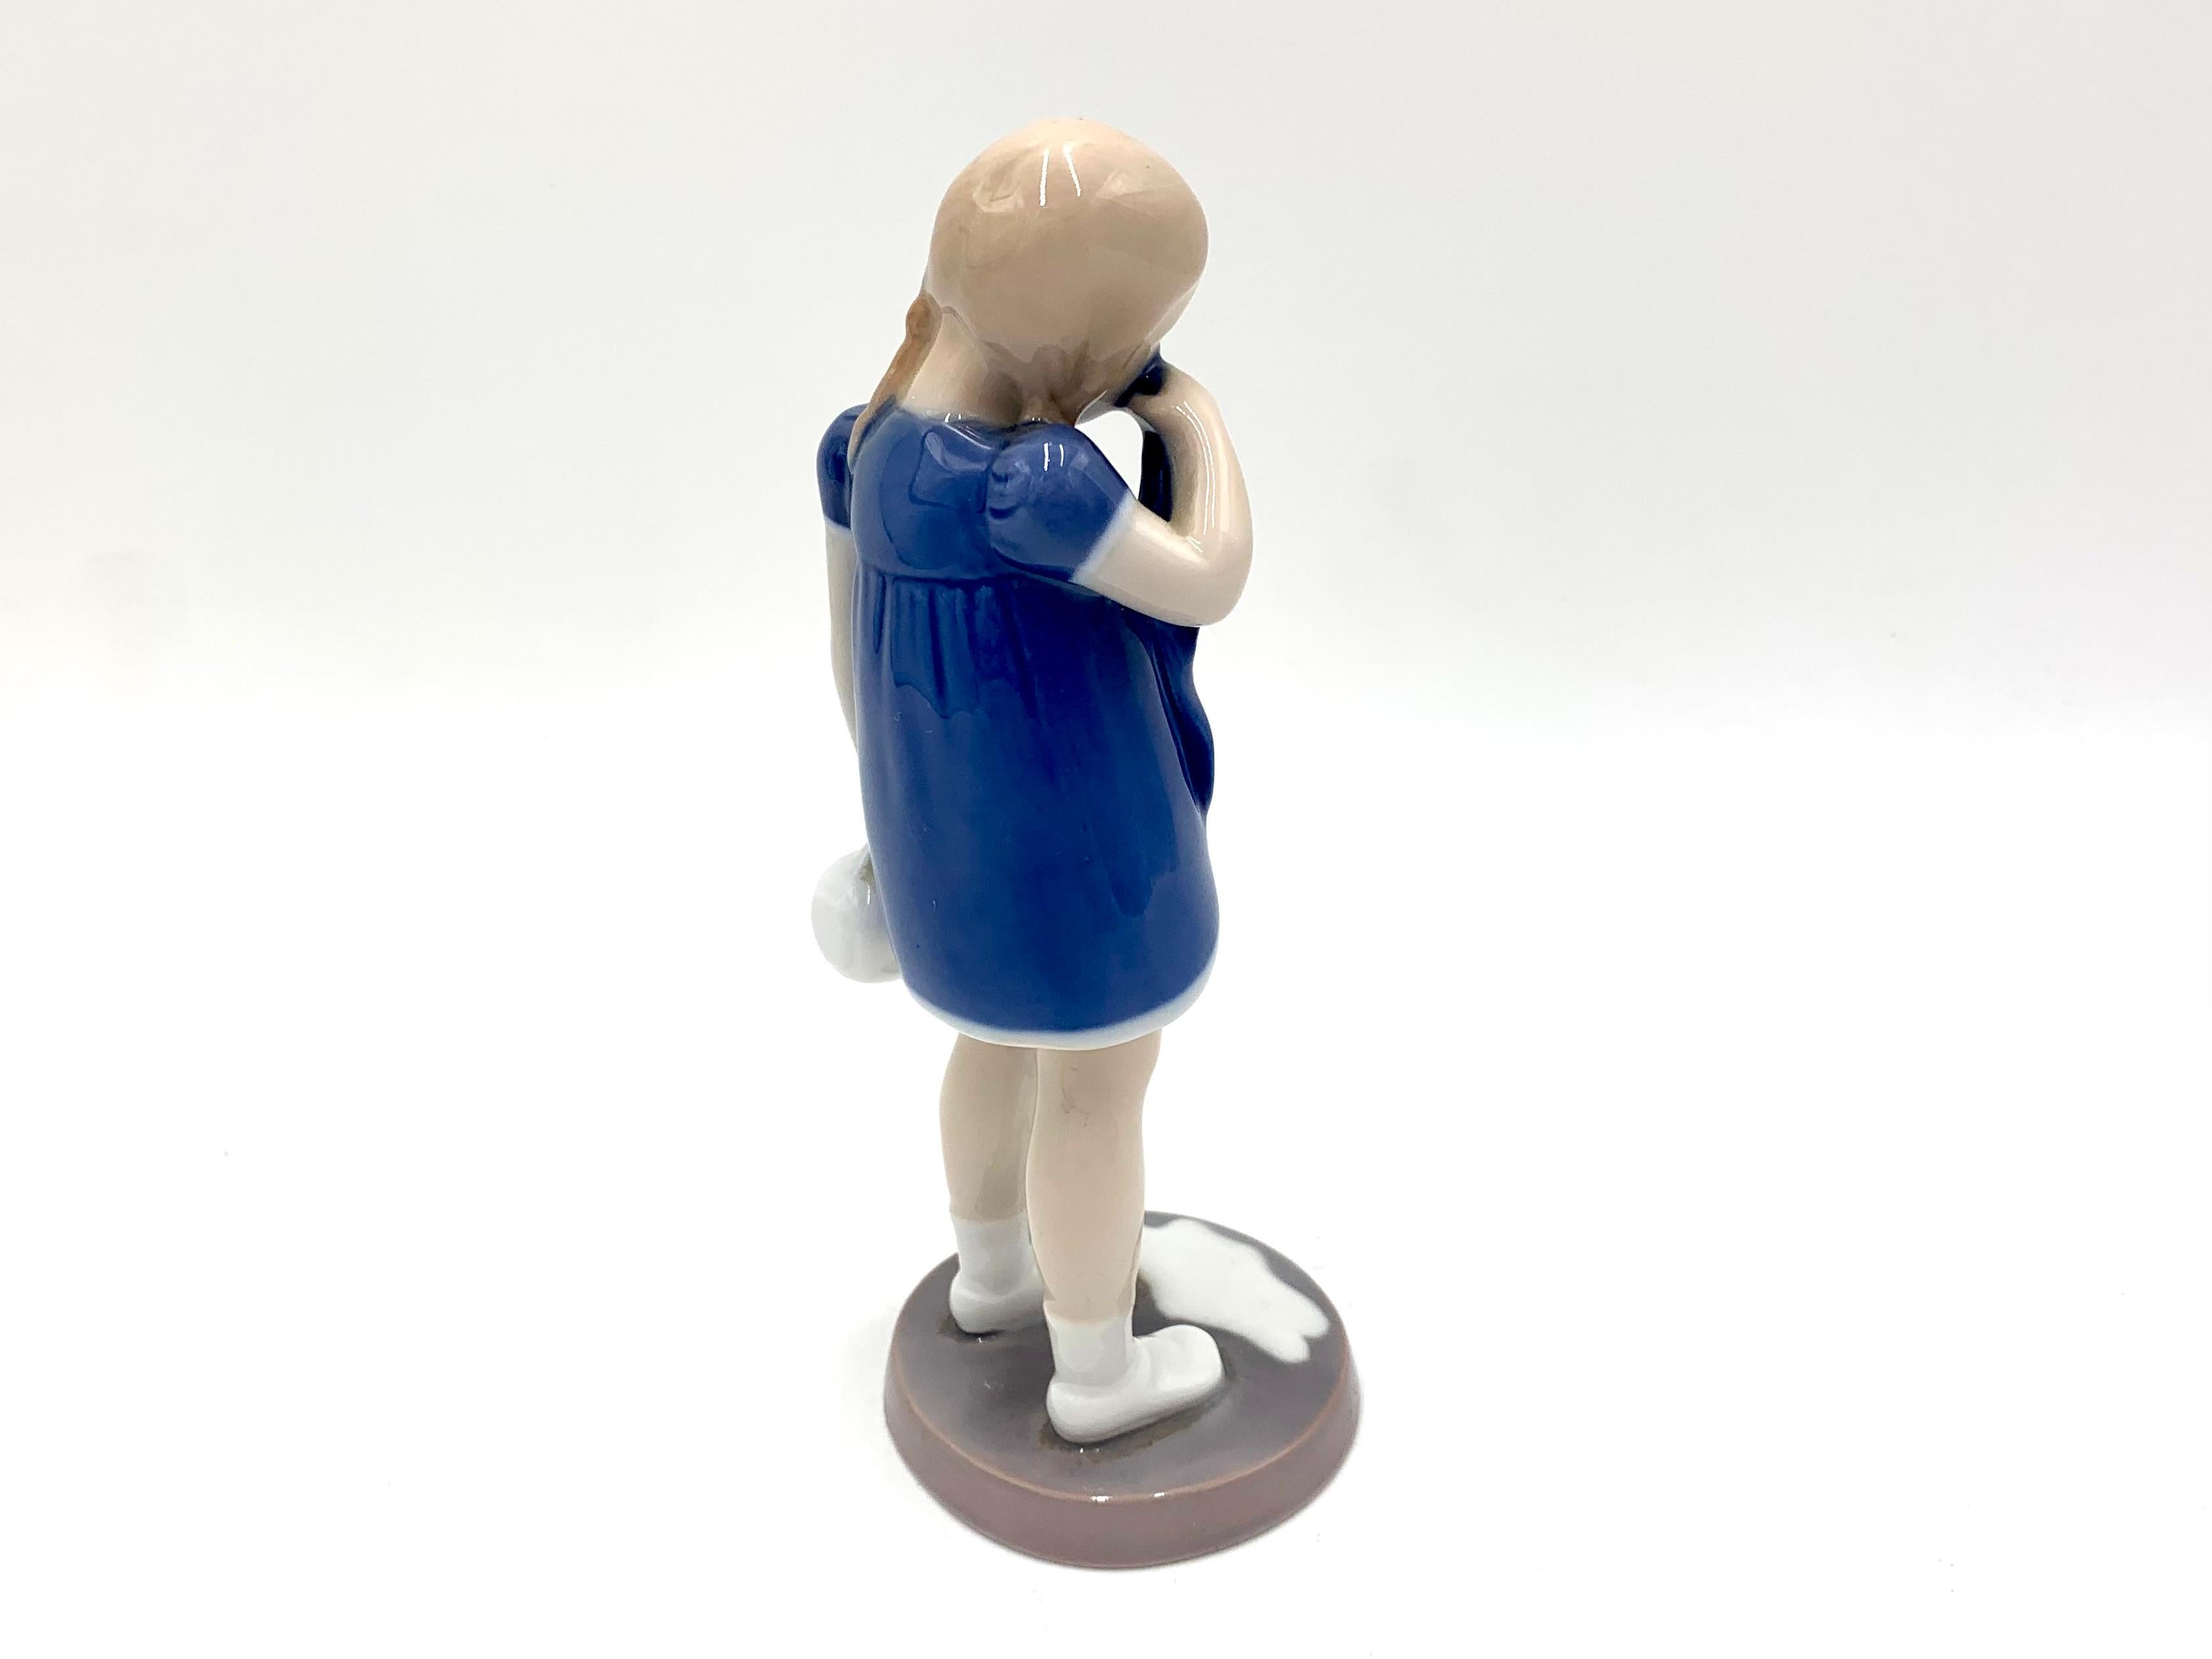 Danish Porcelain Figurine of a Crying Girl, Bing & Grondahl, Denmark, 1950s / 1960s